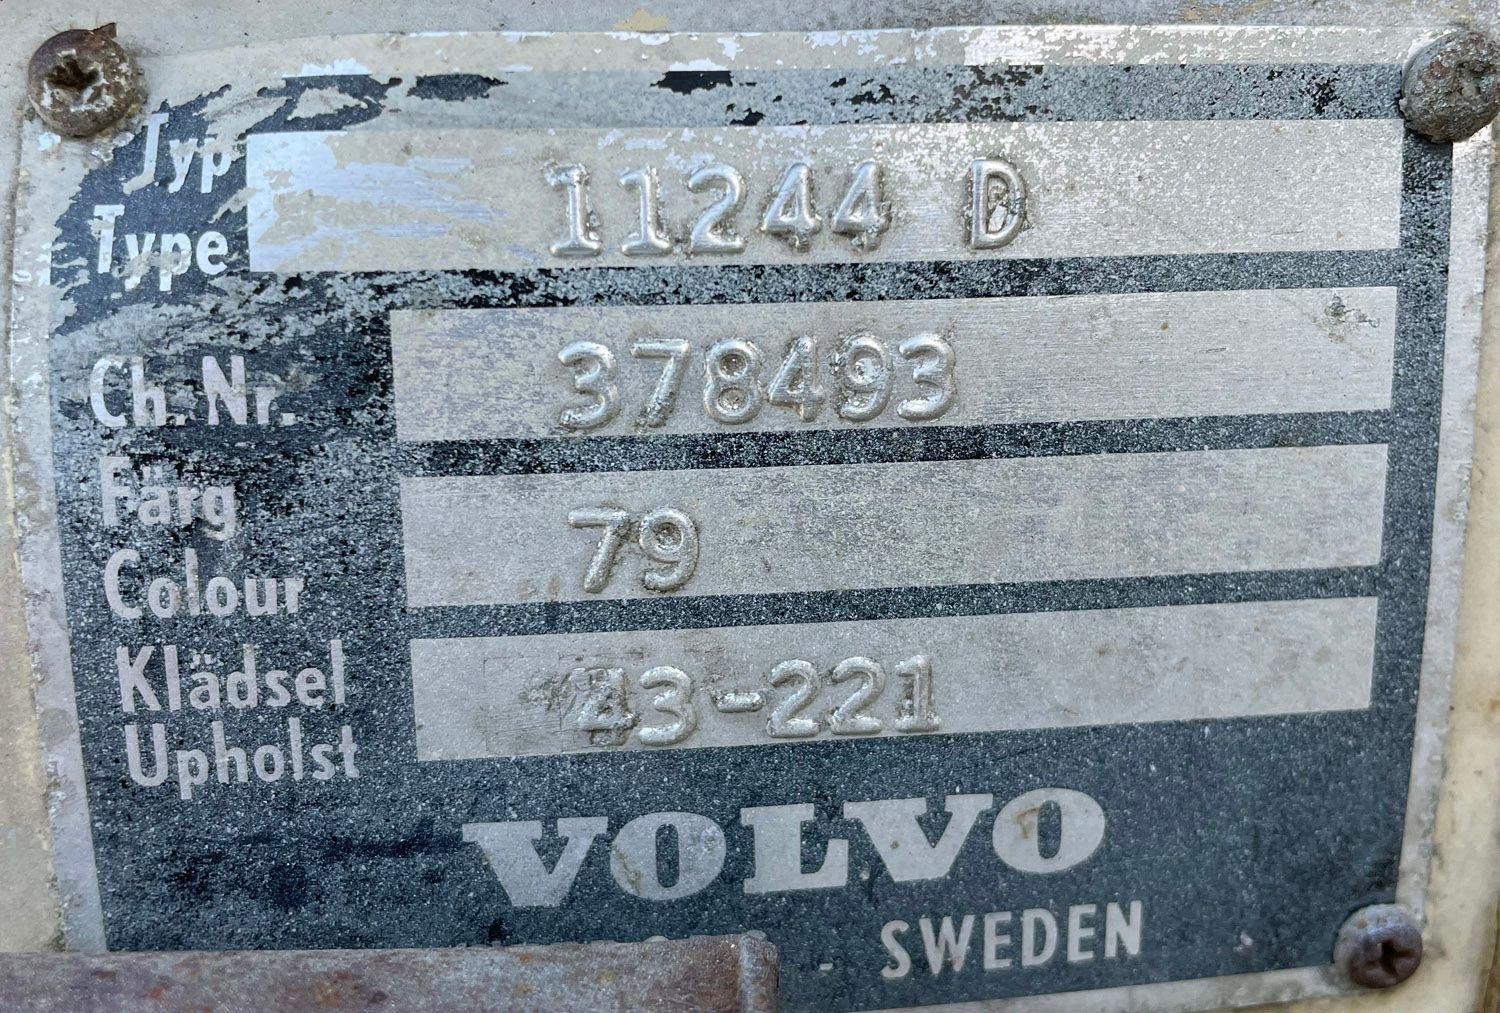 1963 Volvo 544 Sport